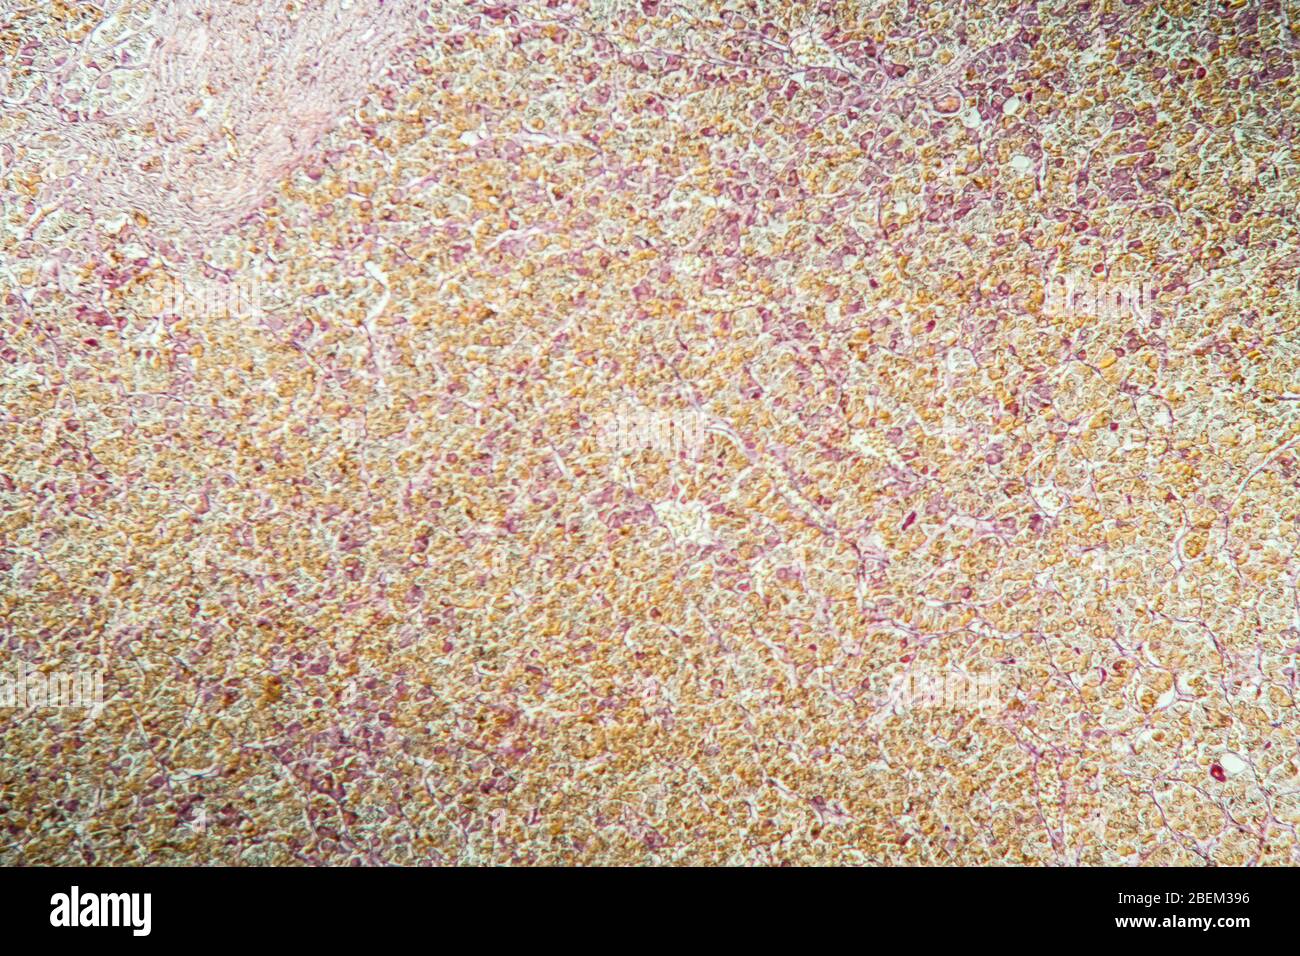 Ghiandola pituitaria al microscopio 100x Foto Stock